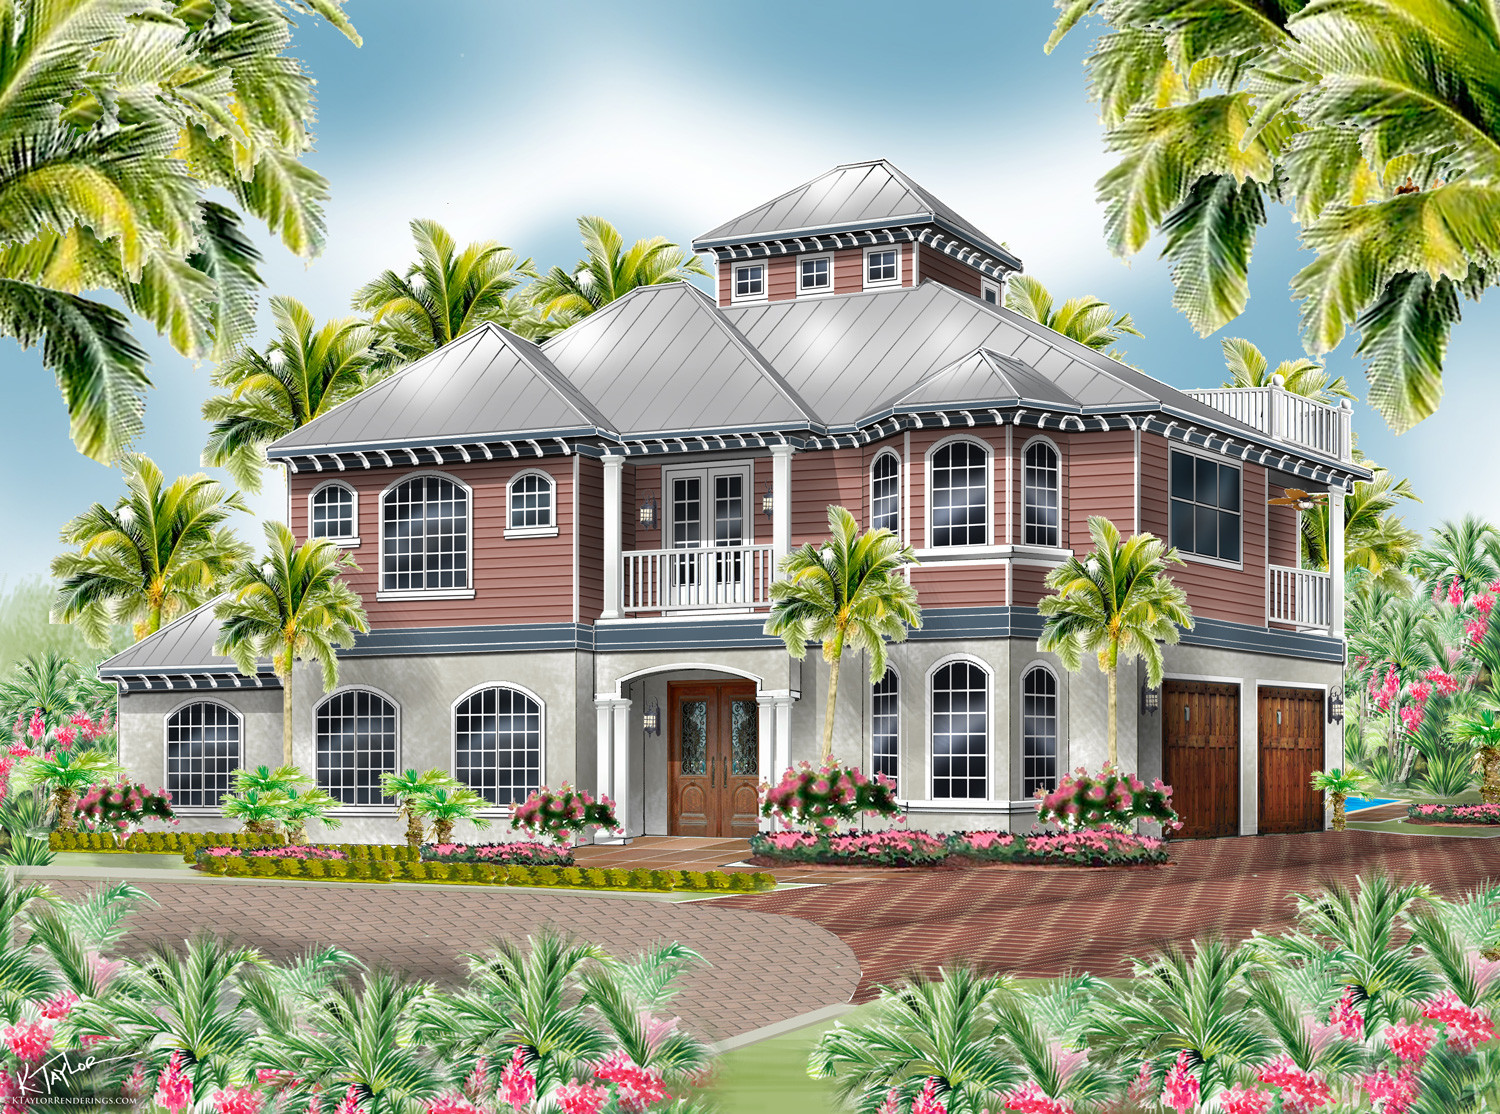 The Hemingway home rendering